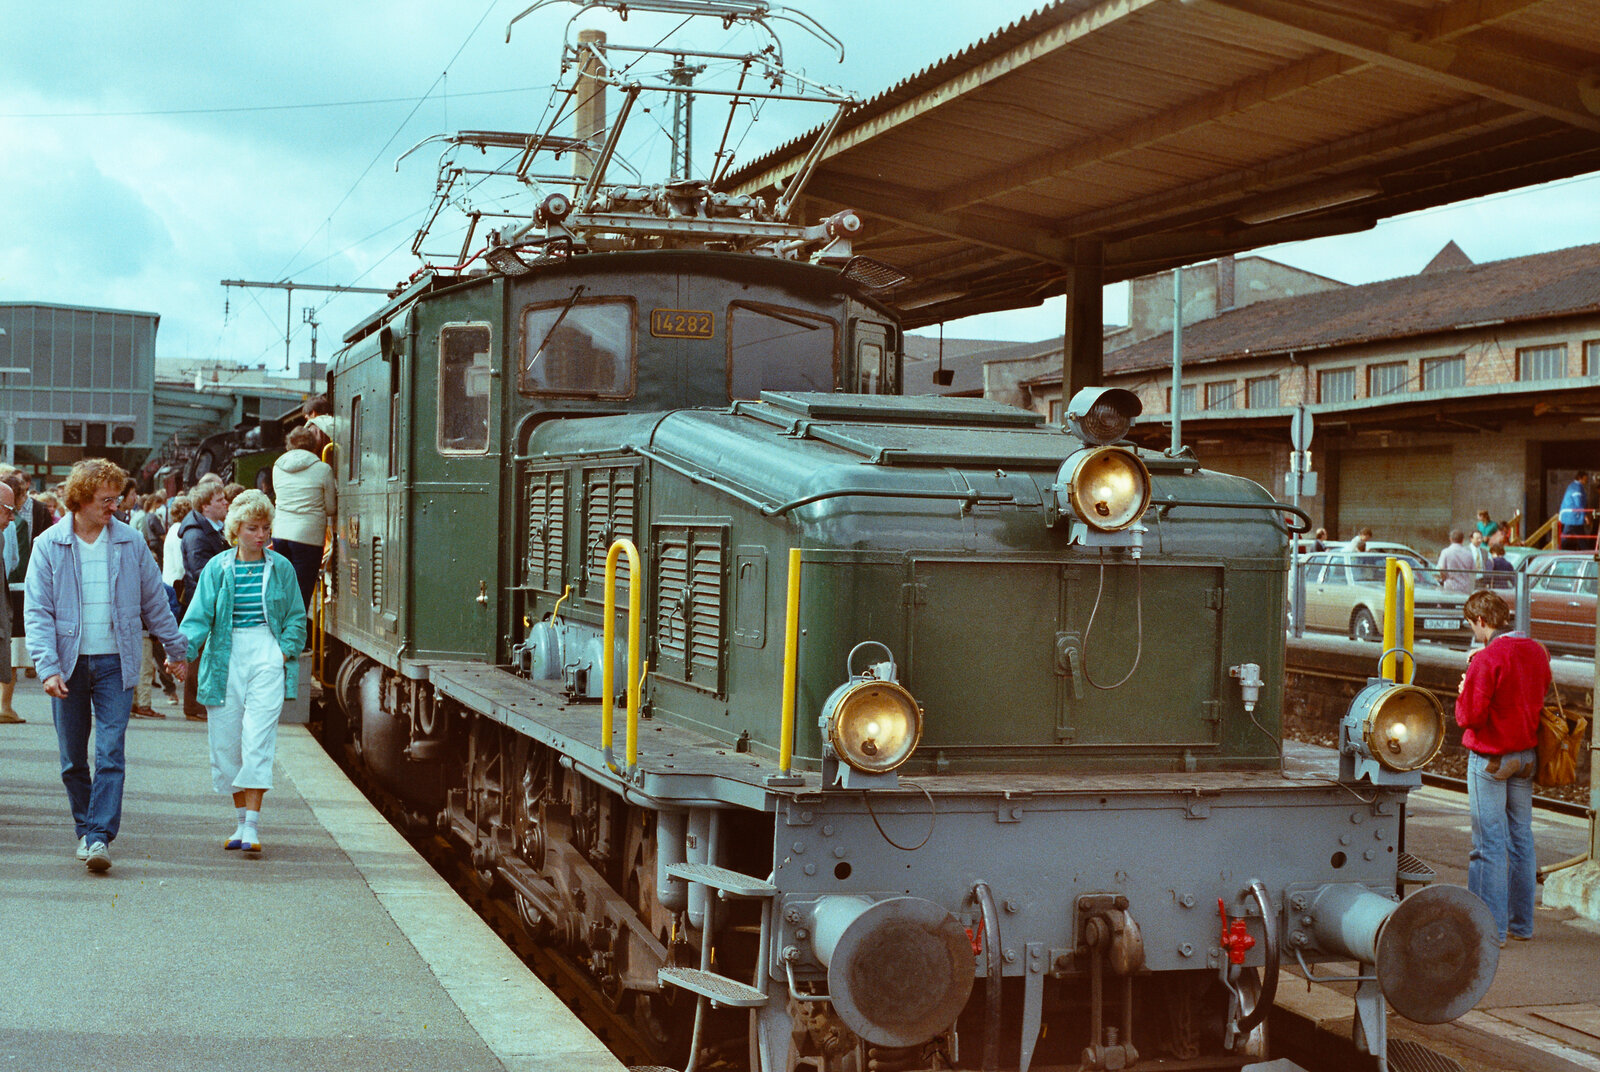 Eine Schweizer Ellok war ein seltener Gast auf den Gleisen des Stuttgarter Hauptbahnhofs, und dazu noch die berühmte Ellok 14 282.
Datum: 31.05.1984